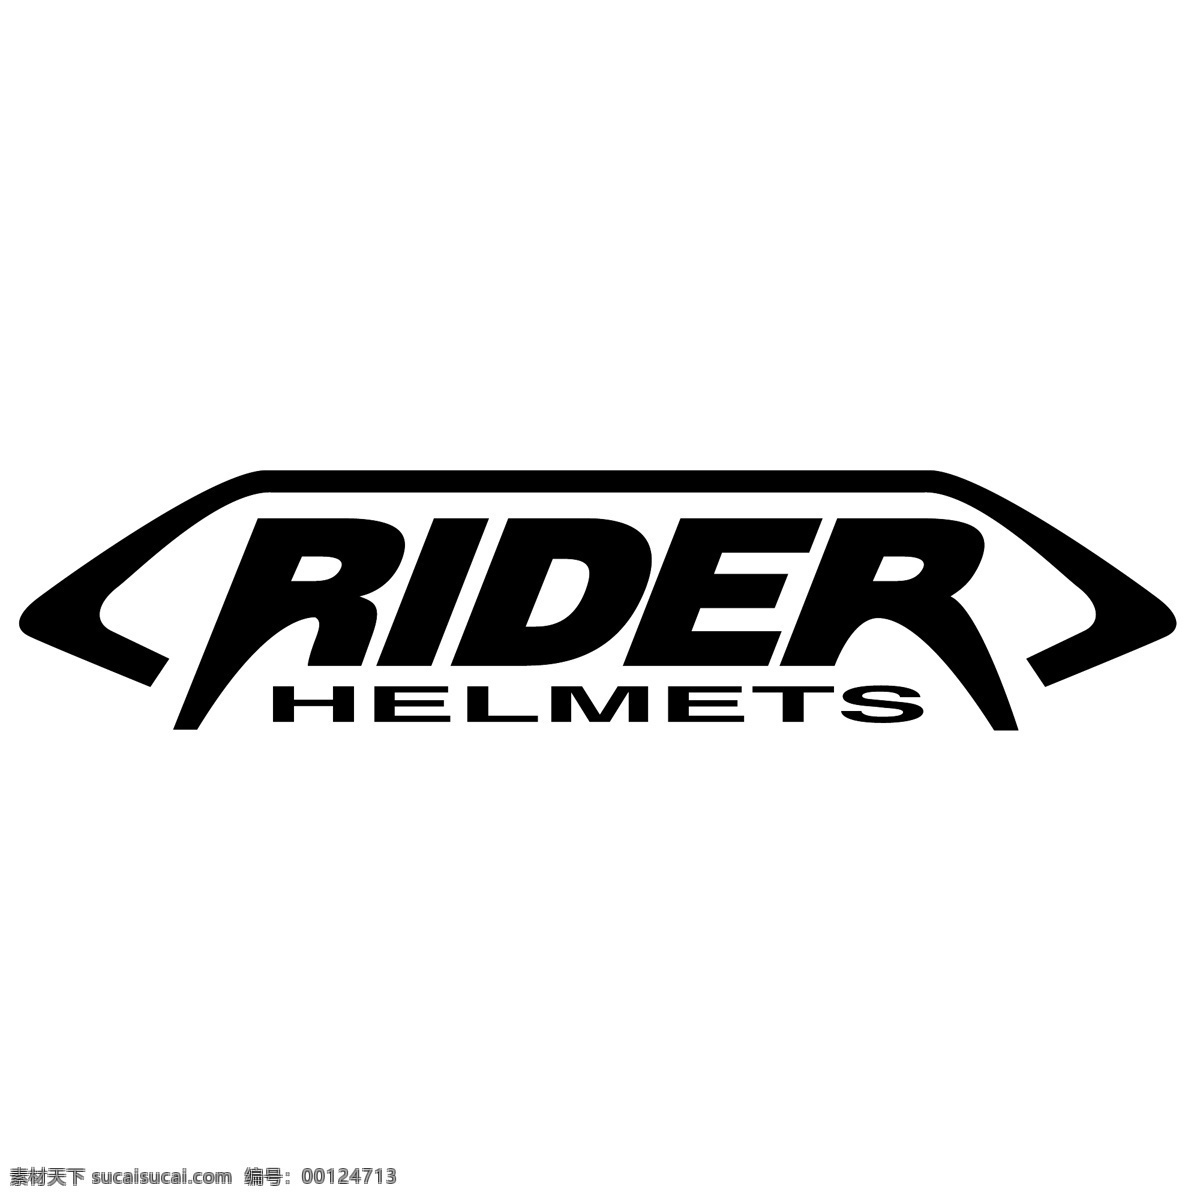 骑士 头盔 标识 公司 免费 品牌 品牌标识 商标 矢量标志下载 免费矢量标识 矢量 psd源文件 logo设计